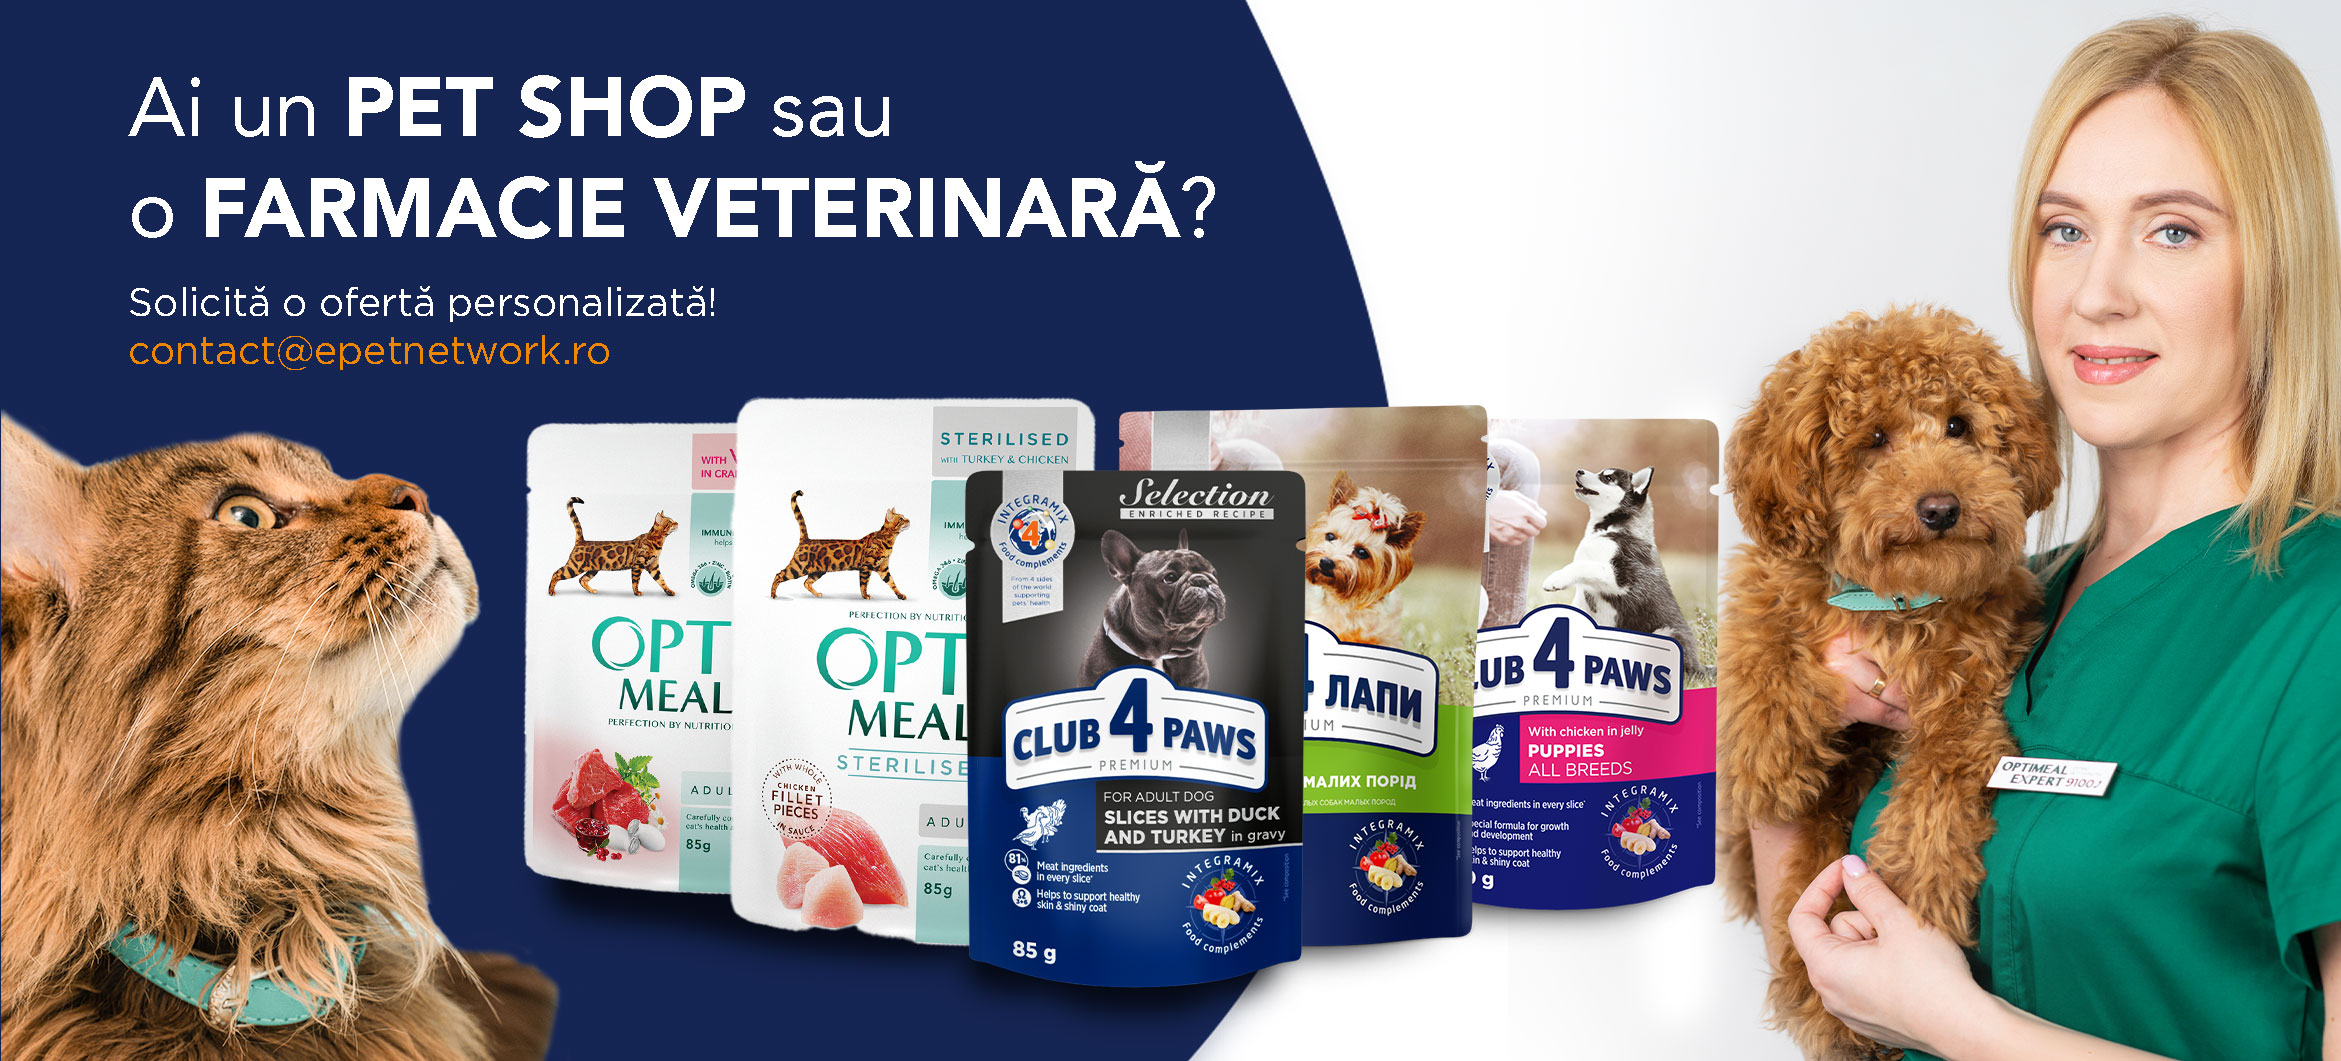 NOU! Avem ofertă B2B pentru produse veterinare!